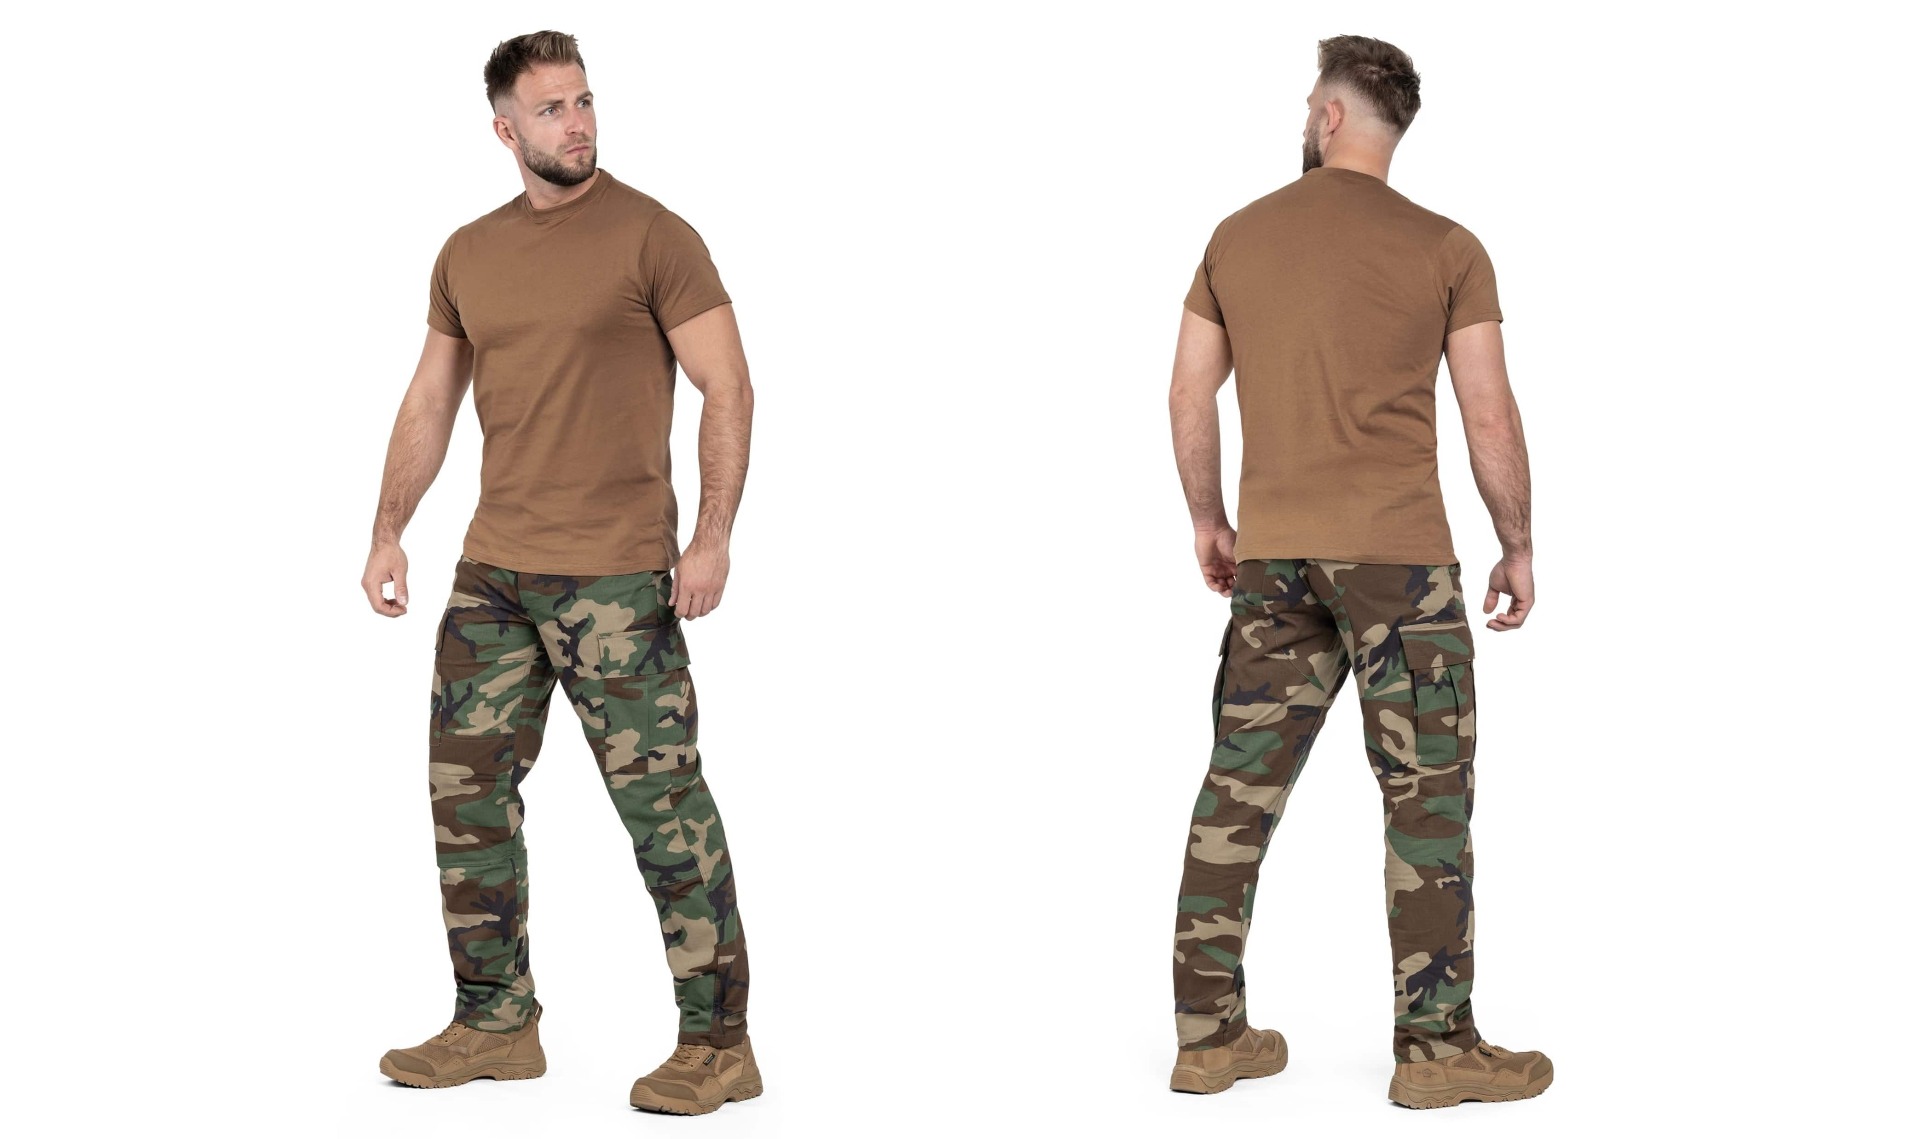 Kupite rjavo vojaško majico US Army za popoln taktičen videz. Visoko kakovostna in udobna majica za ljubitelje vojaške mode. Opremljen.si - vaša destinacija za taktična oblačila.